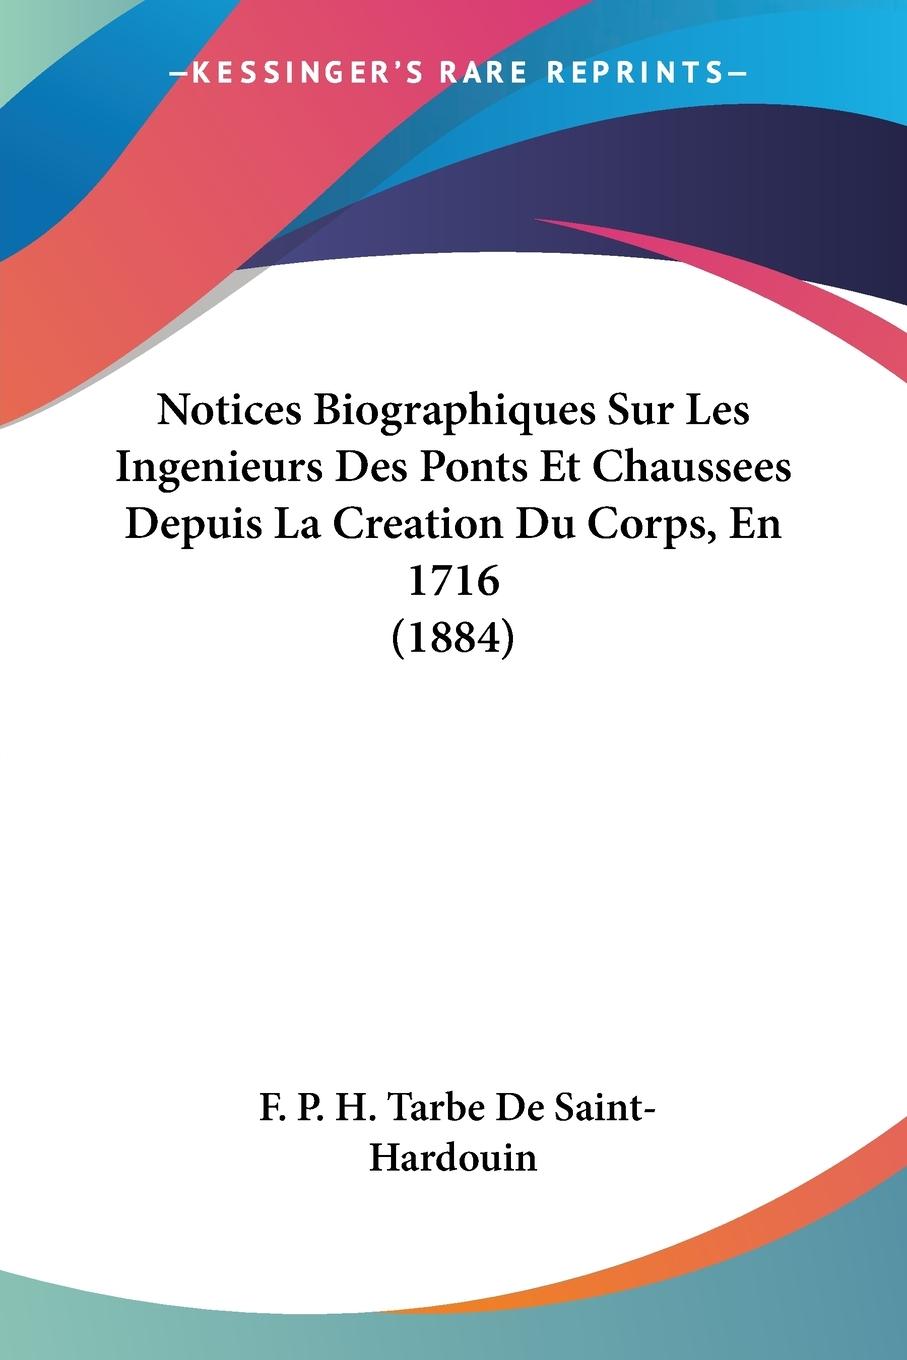 Notices Biographiques Sur Les Ingenieurs Des Ponts Et Chaussees Depuis La Creation Du Corps, En 1716 (1884) - De Saint-Hardouin, F. P. H. Tarbe